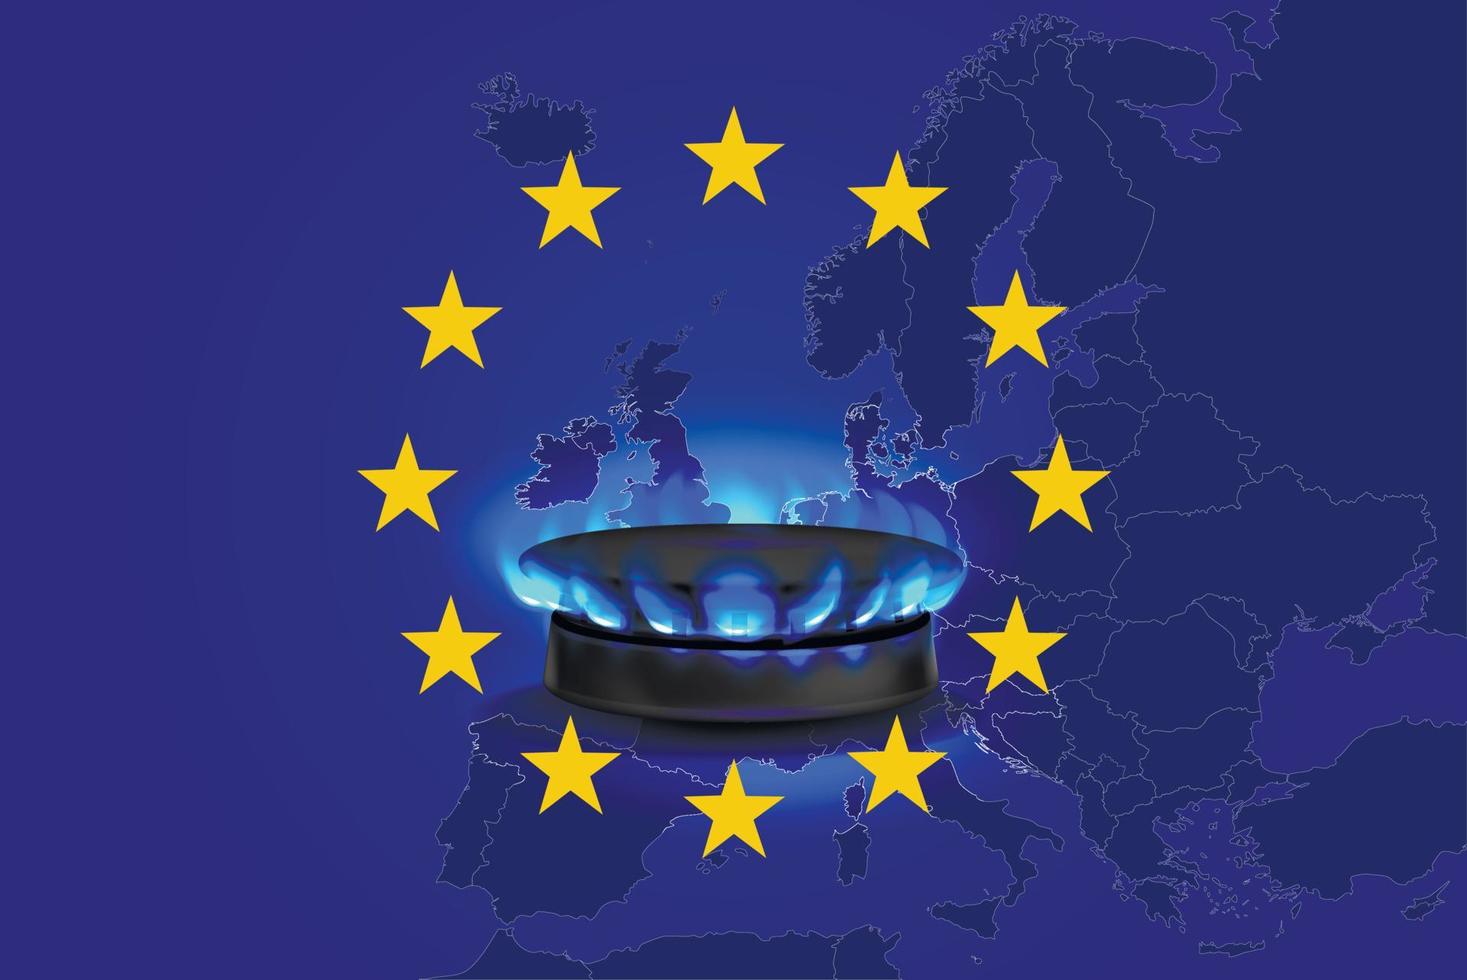 gascrisis in de eu. brandende gasvlam van een gasfornuis tegen de achtergrond van een kaart en de vlag van de europese unie. zakelijke spandoek. vector illustratie